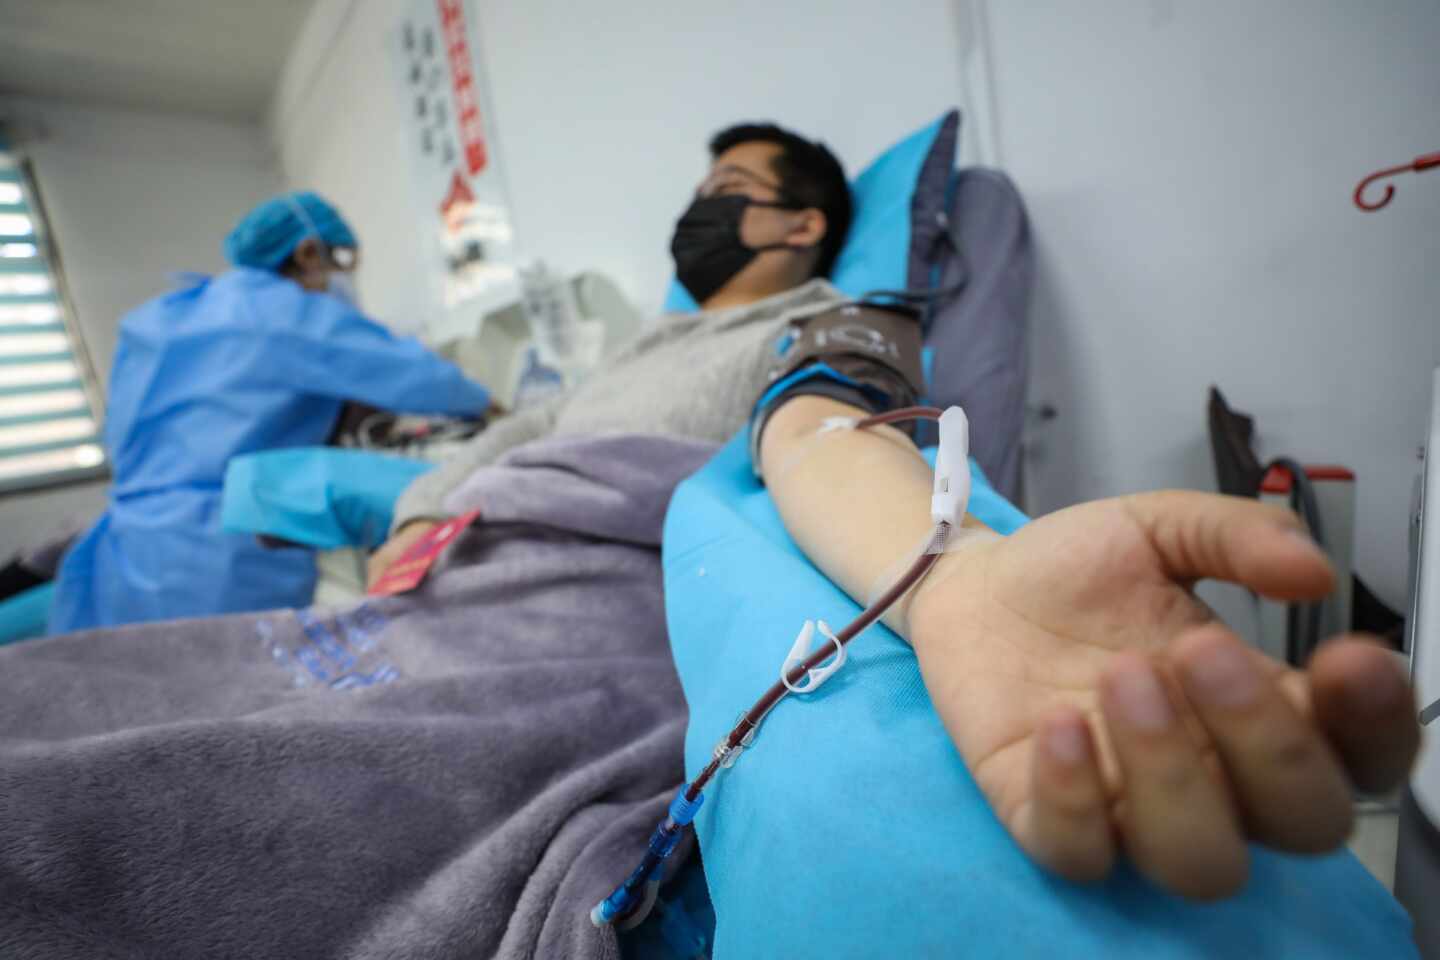 Wuhan habilitará otros 19 hospitales y 30.000 camas para atender a los infectados por el coronavirus